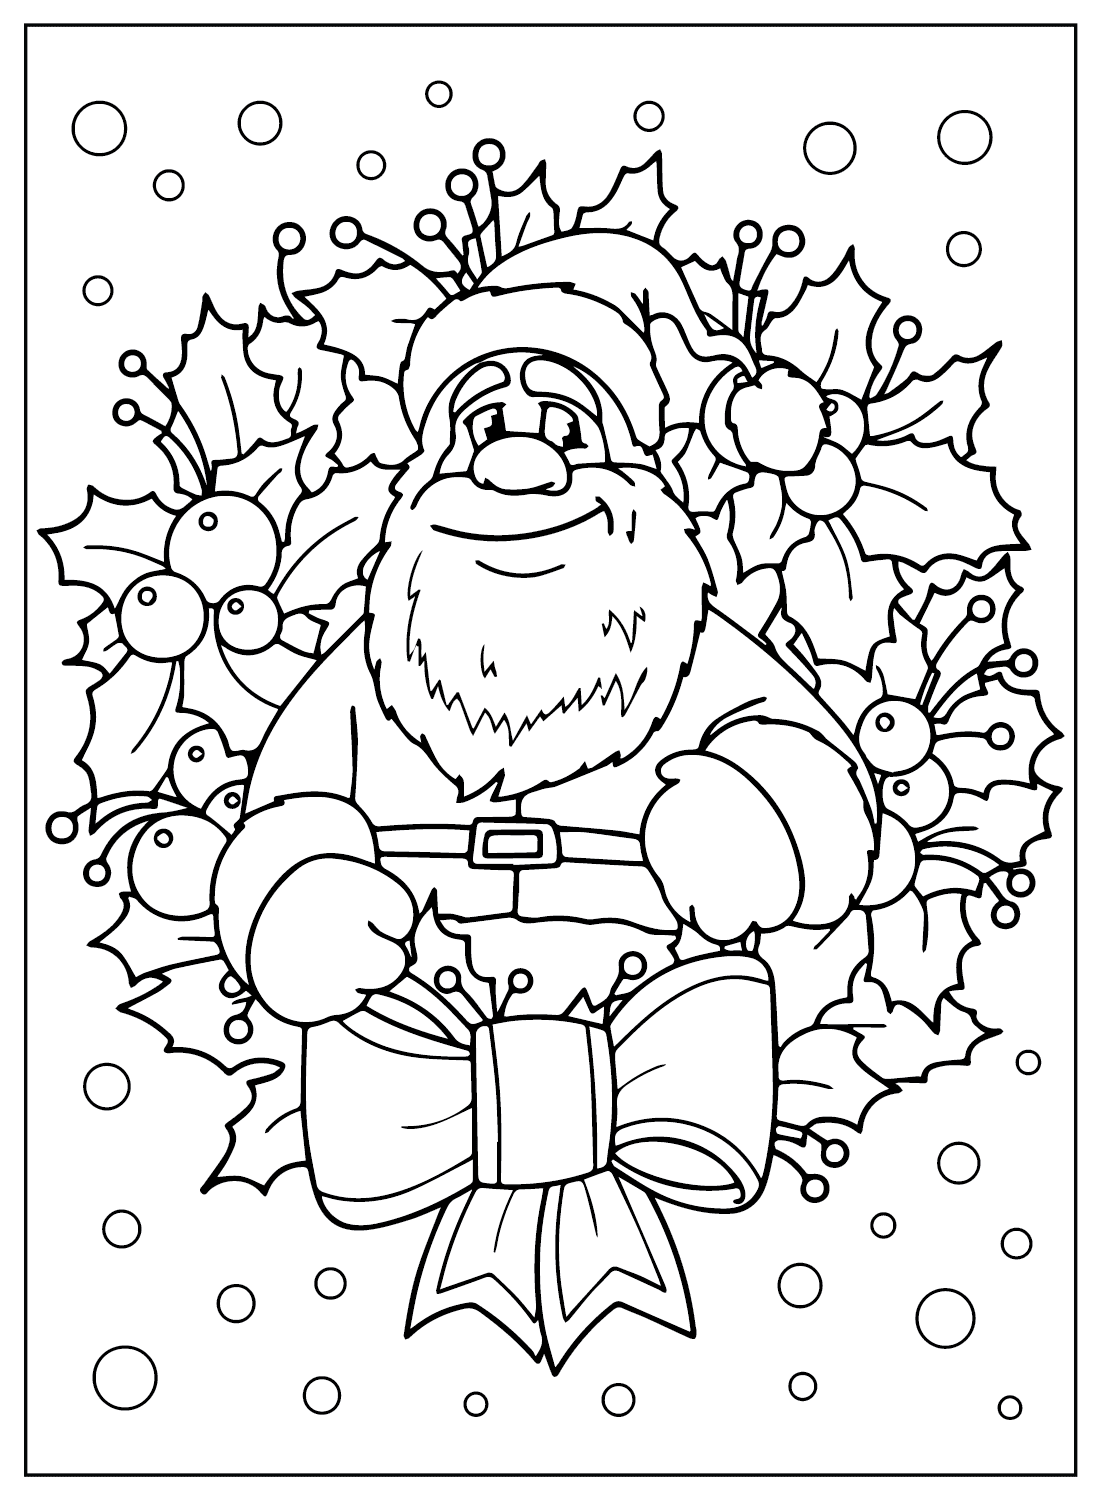 Coloriage gratuit à imprimer du Père Noël du Père Noël